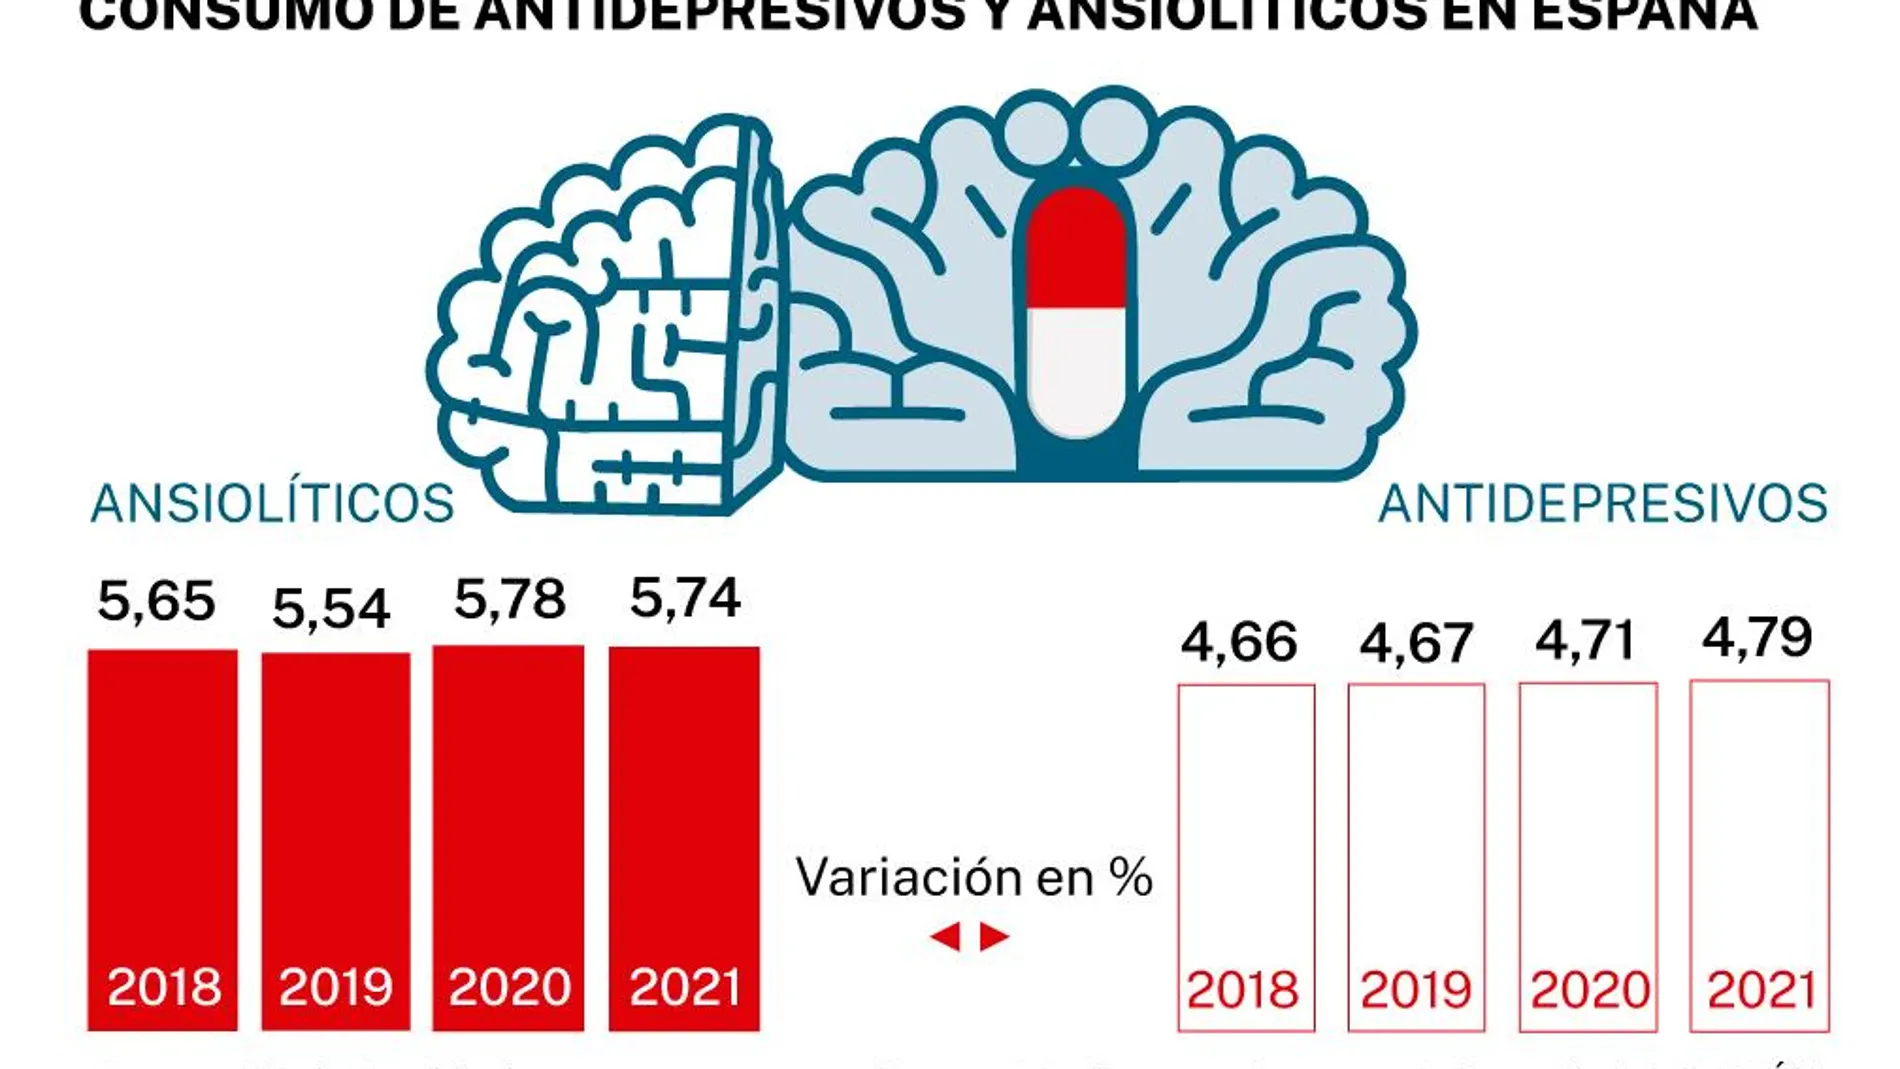 Consumo de antidepresivos y ansiolíticos en España entre 2018 y 2021